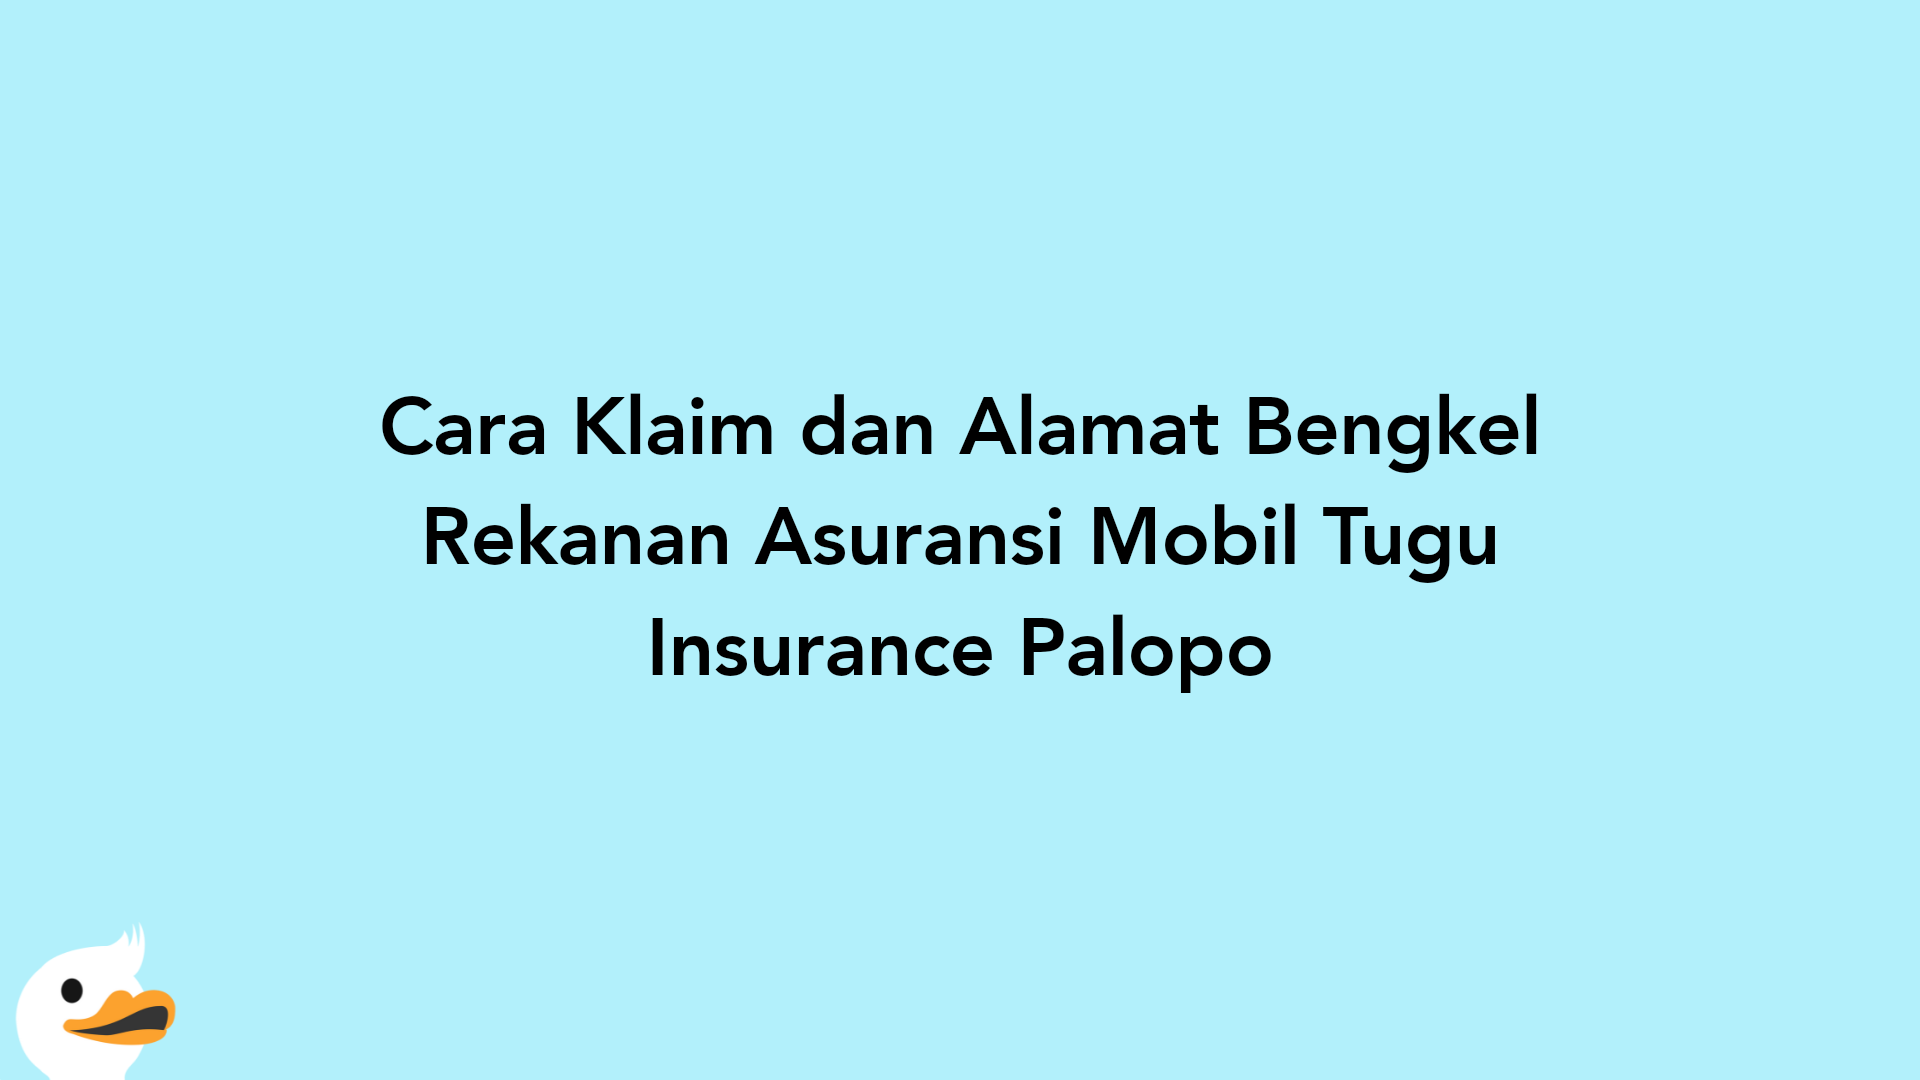 Cara Klaim dan Alamat Bengkel Rekanan Asuransi Mobil Tugu Insurance Palopo